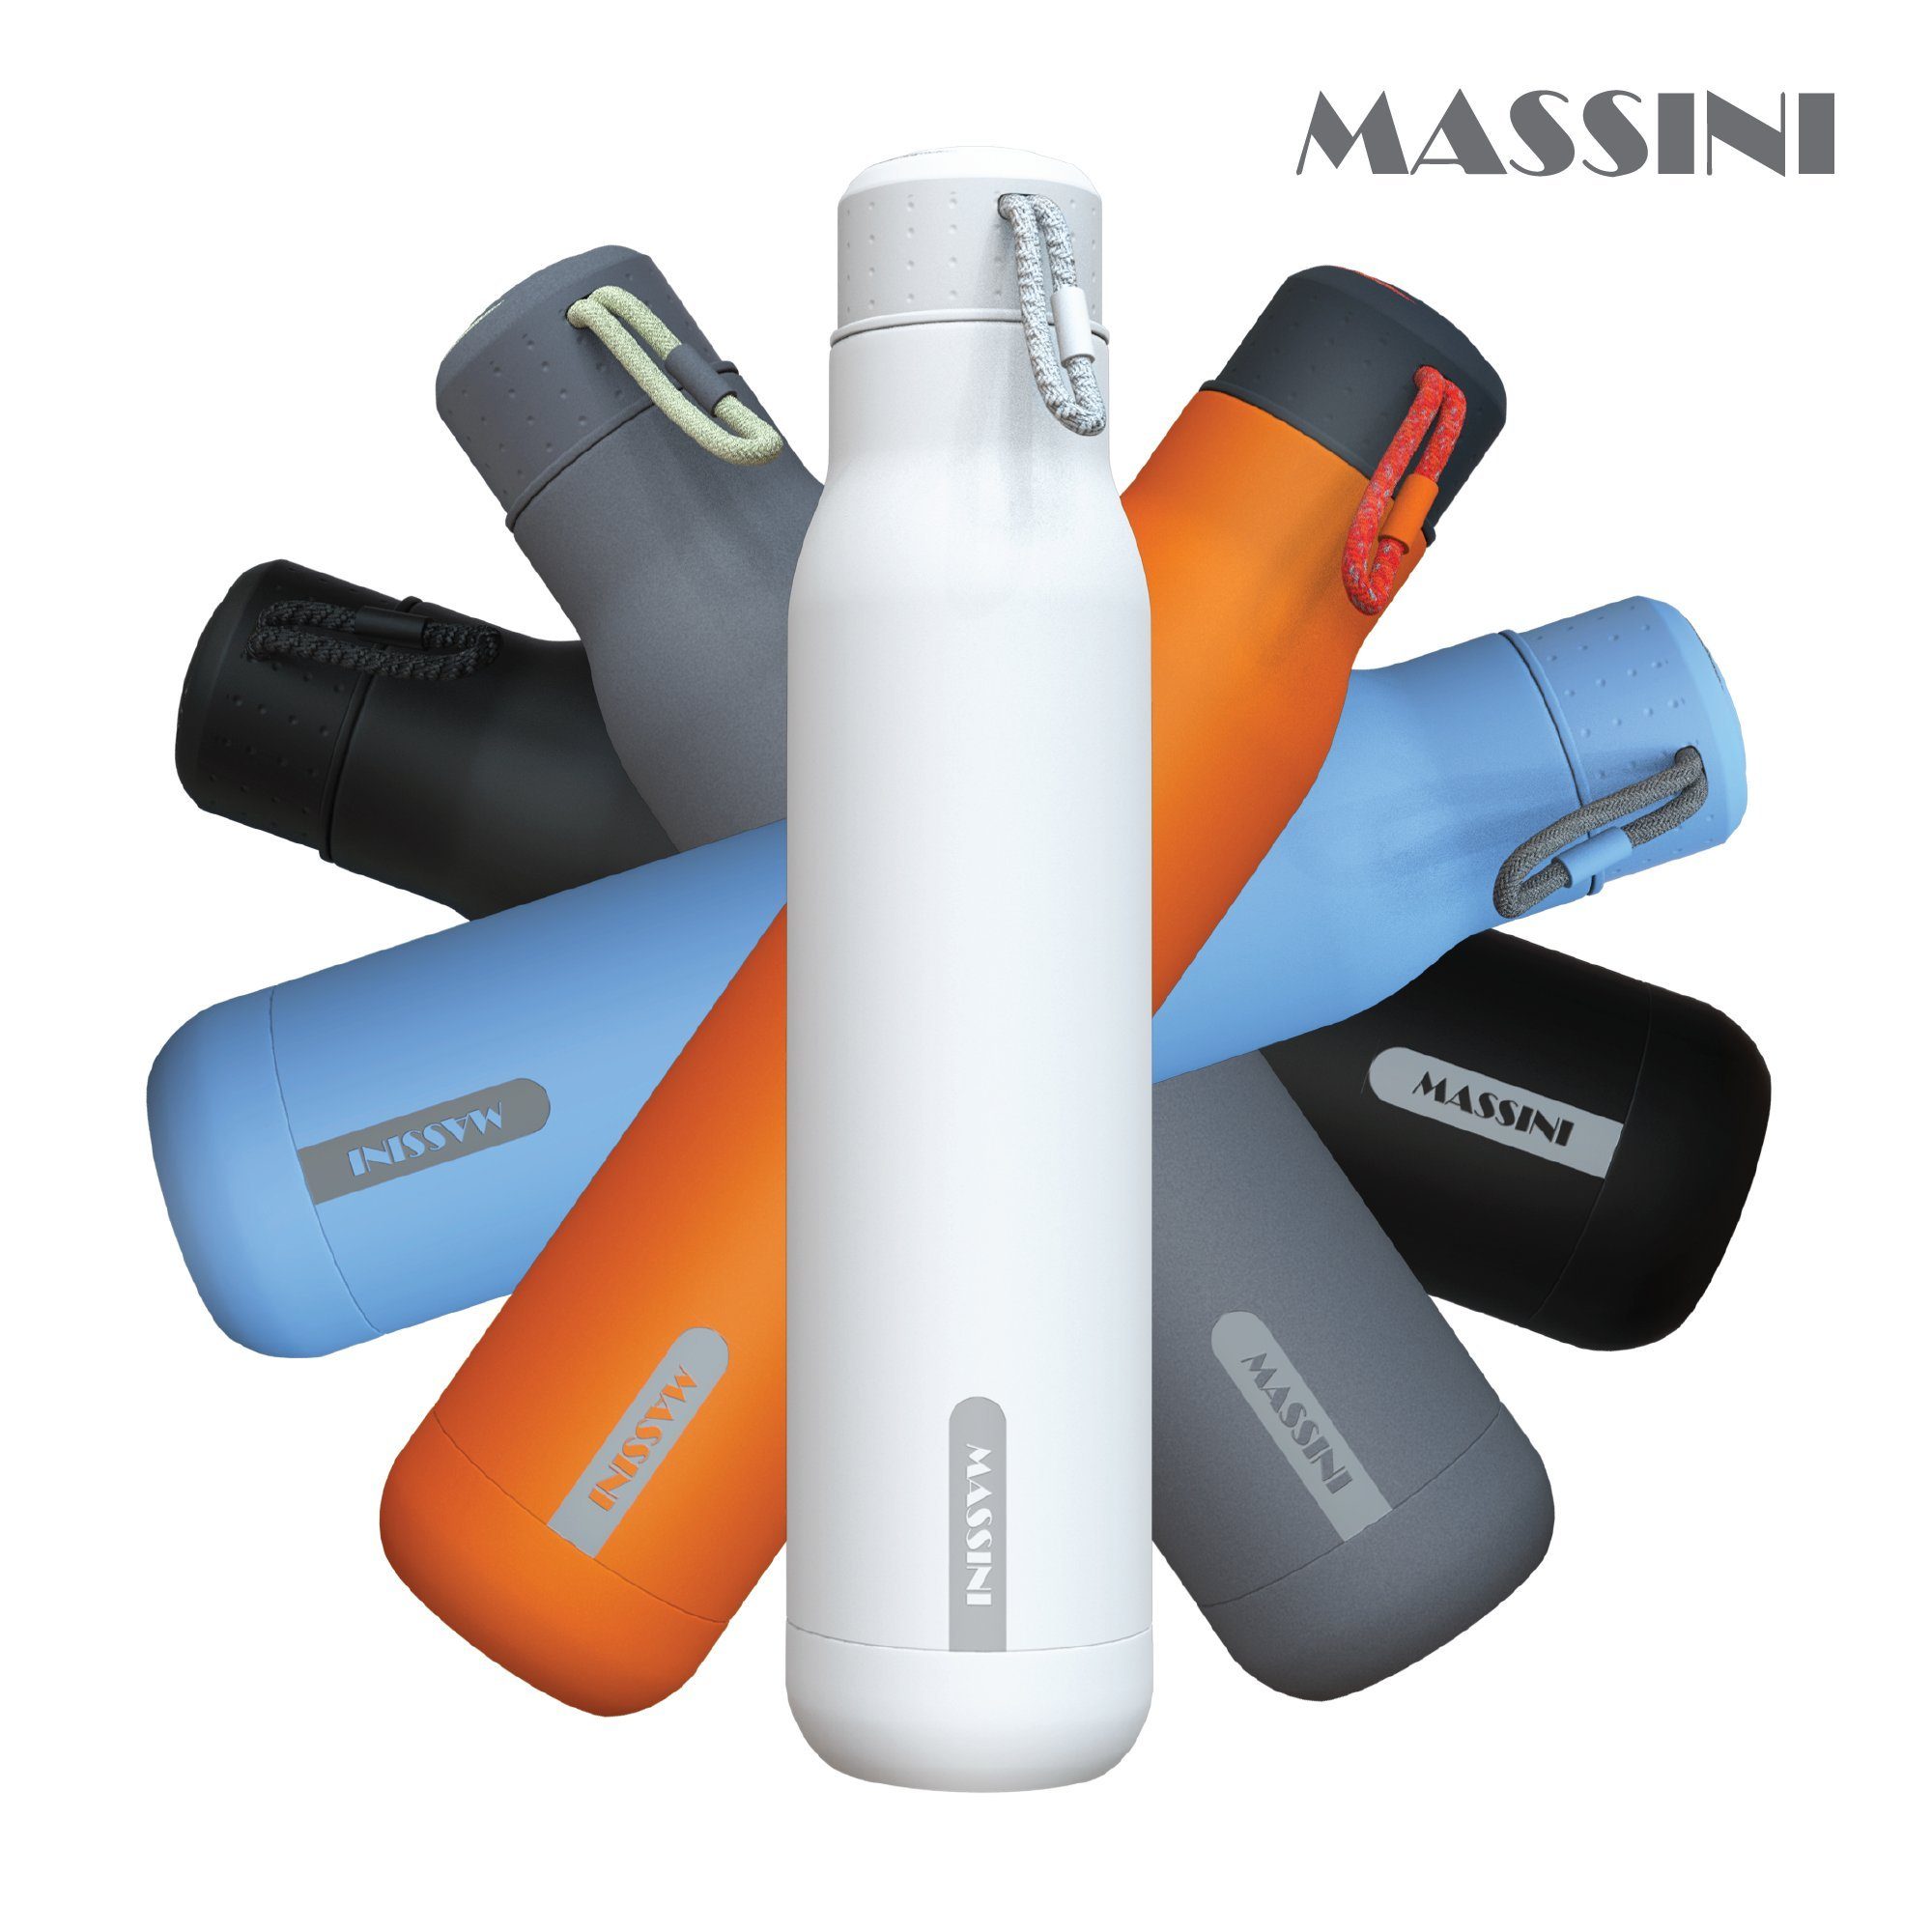 Isolier- Auslaufsicher, und Massini Edelstahl Pulverbeschichtung, Thermoflasche Weiß Kohlensäure geeignet, Design Trinkflasche BPA-Frei Trinkflasche